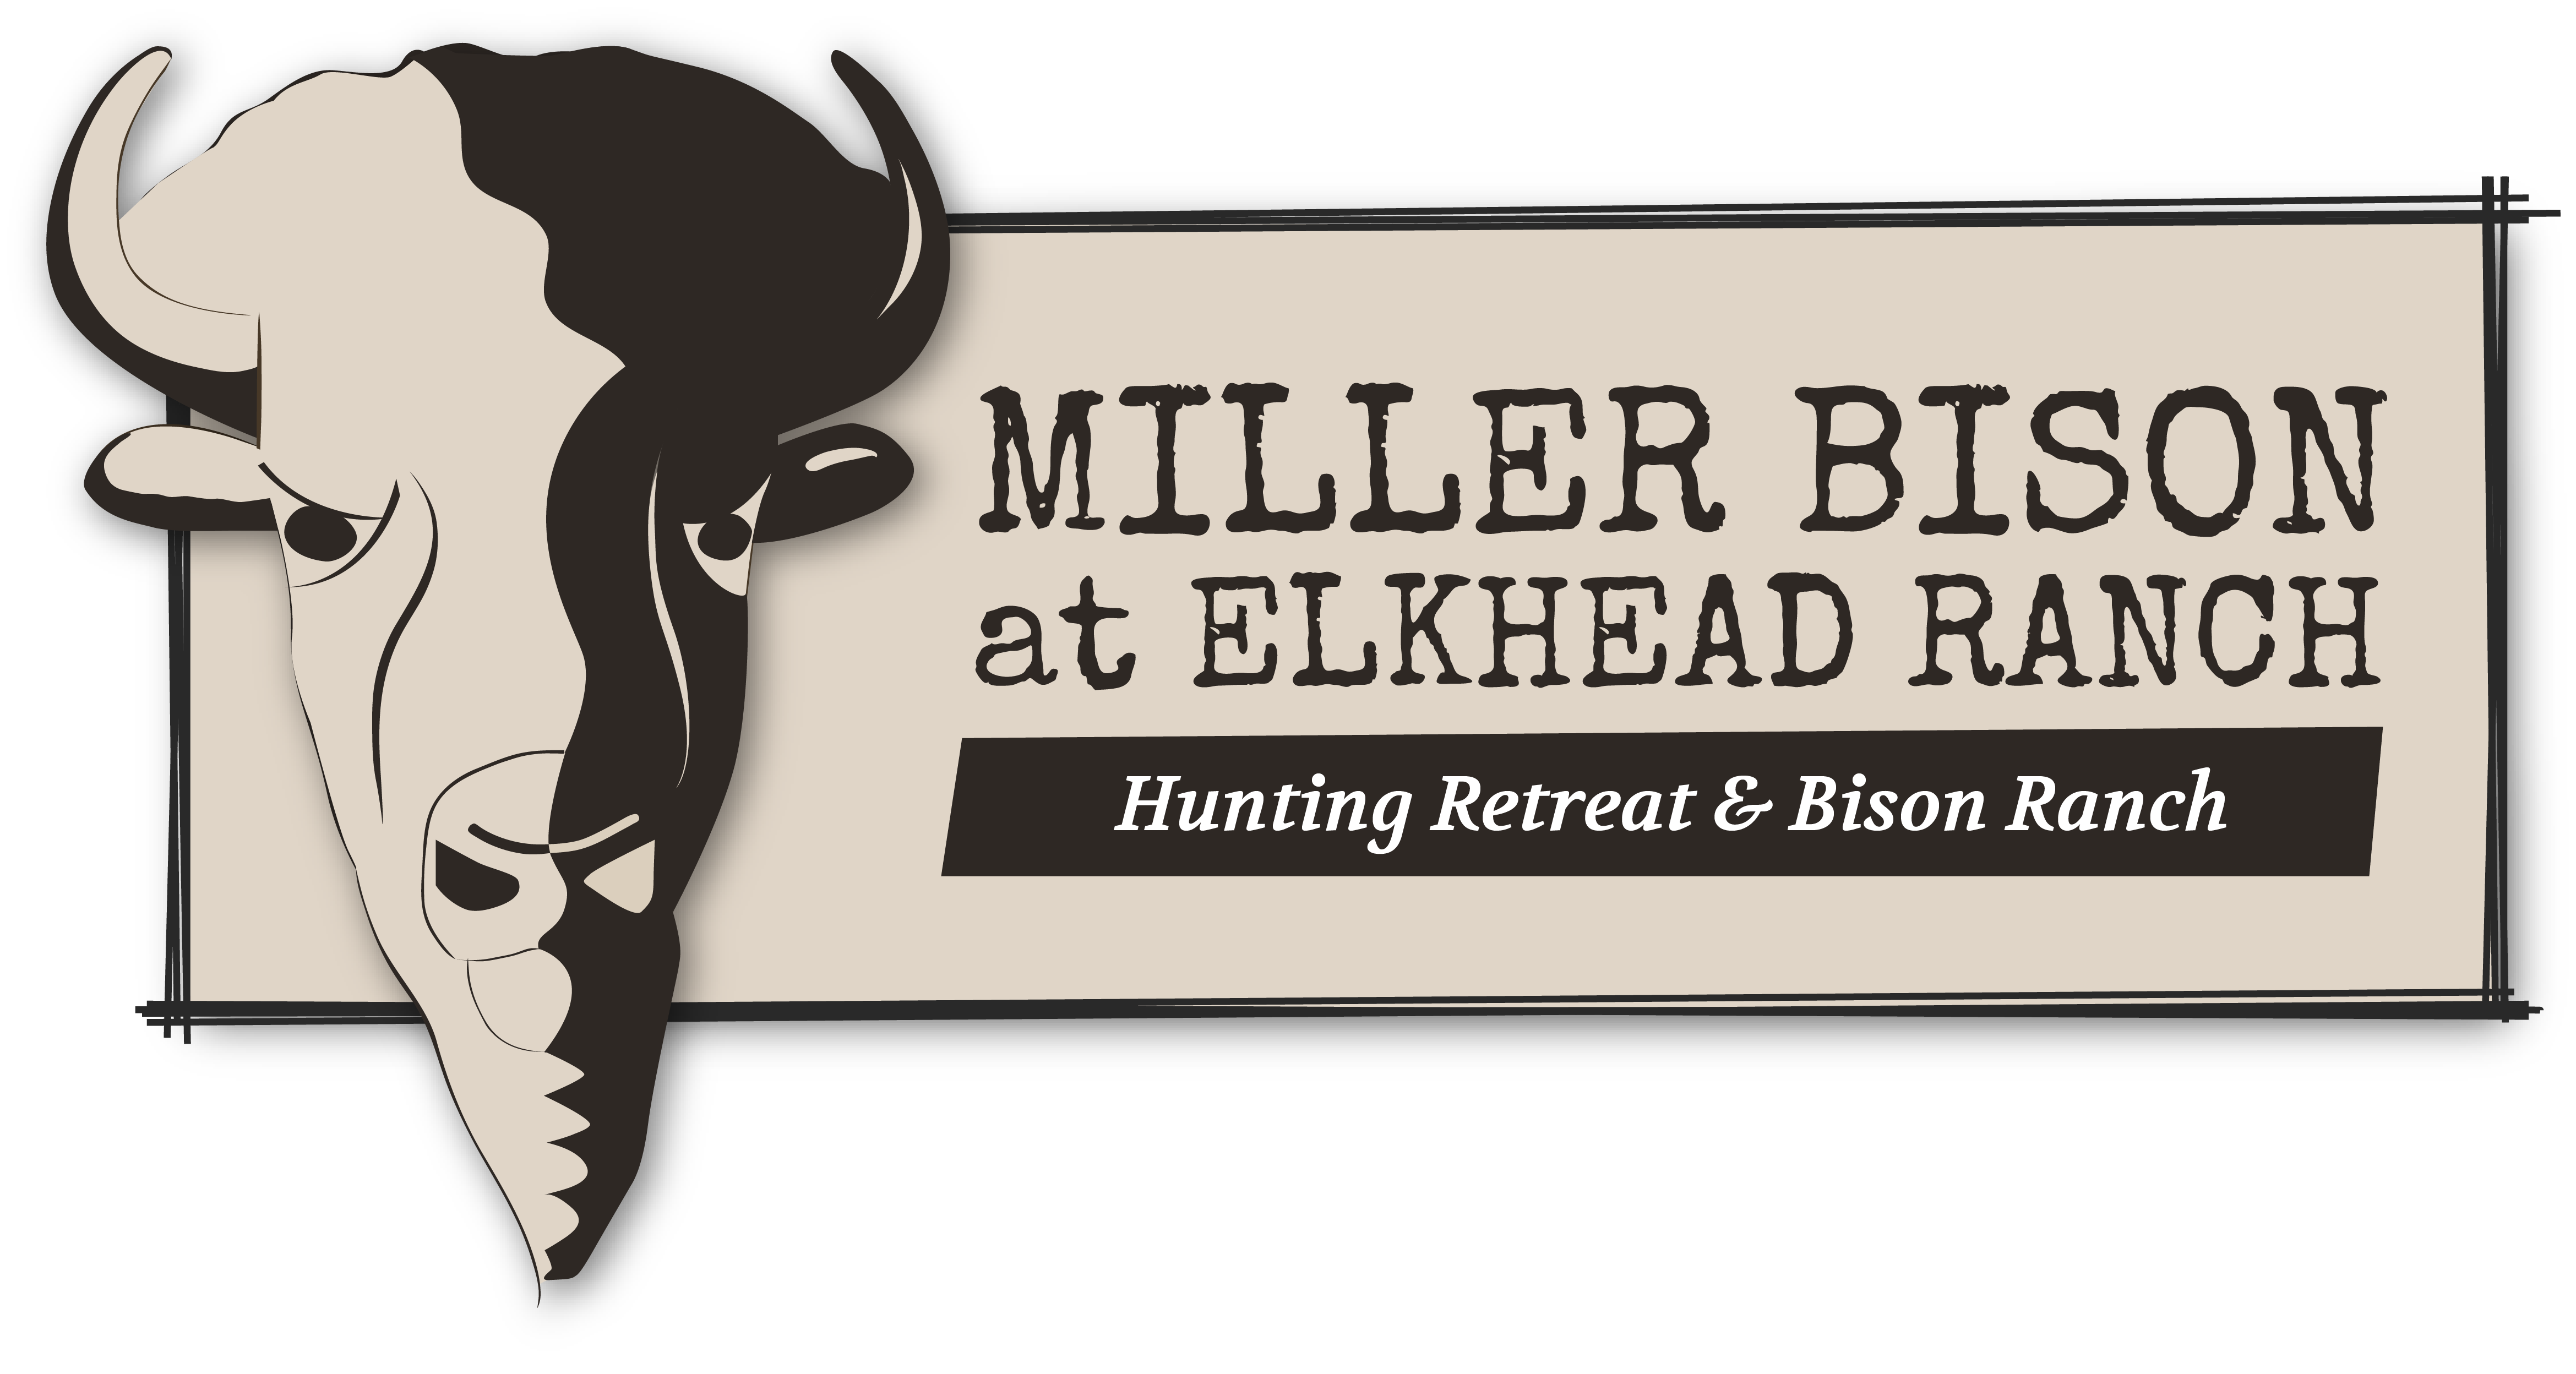 Miller Bison at Elkhead Ranch